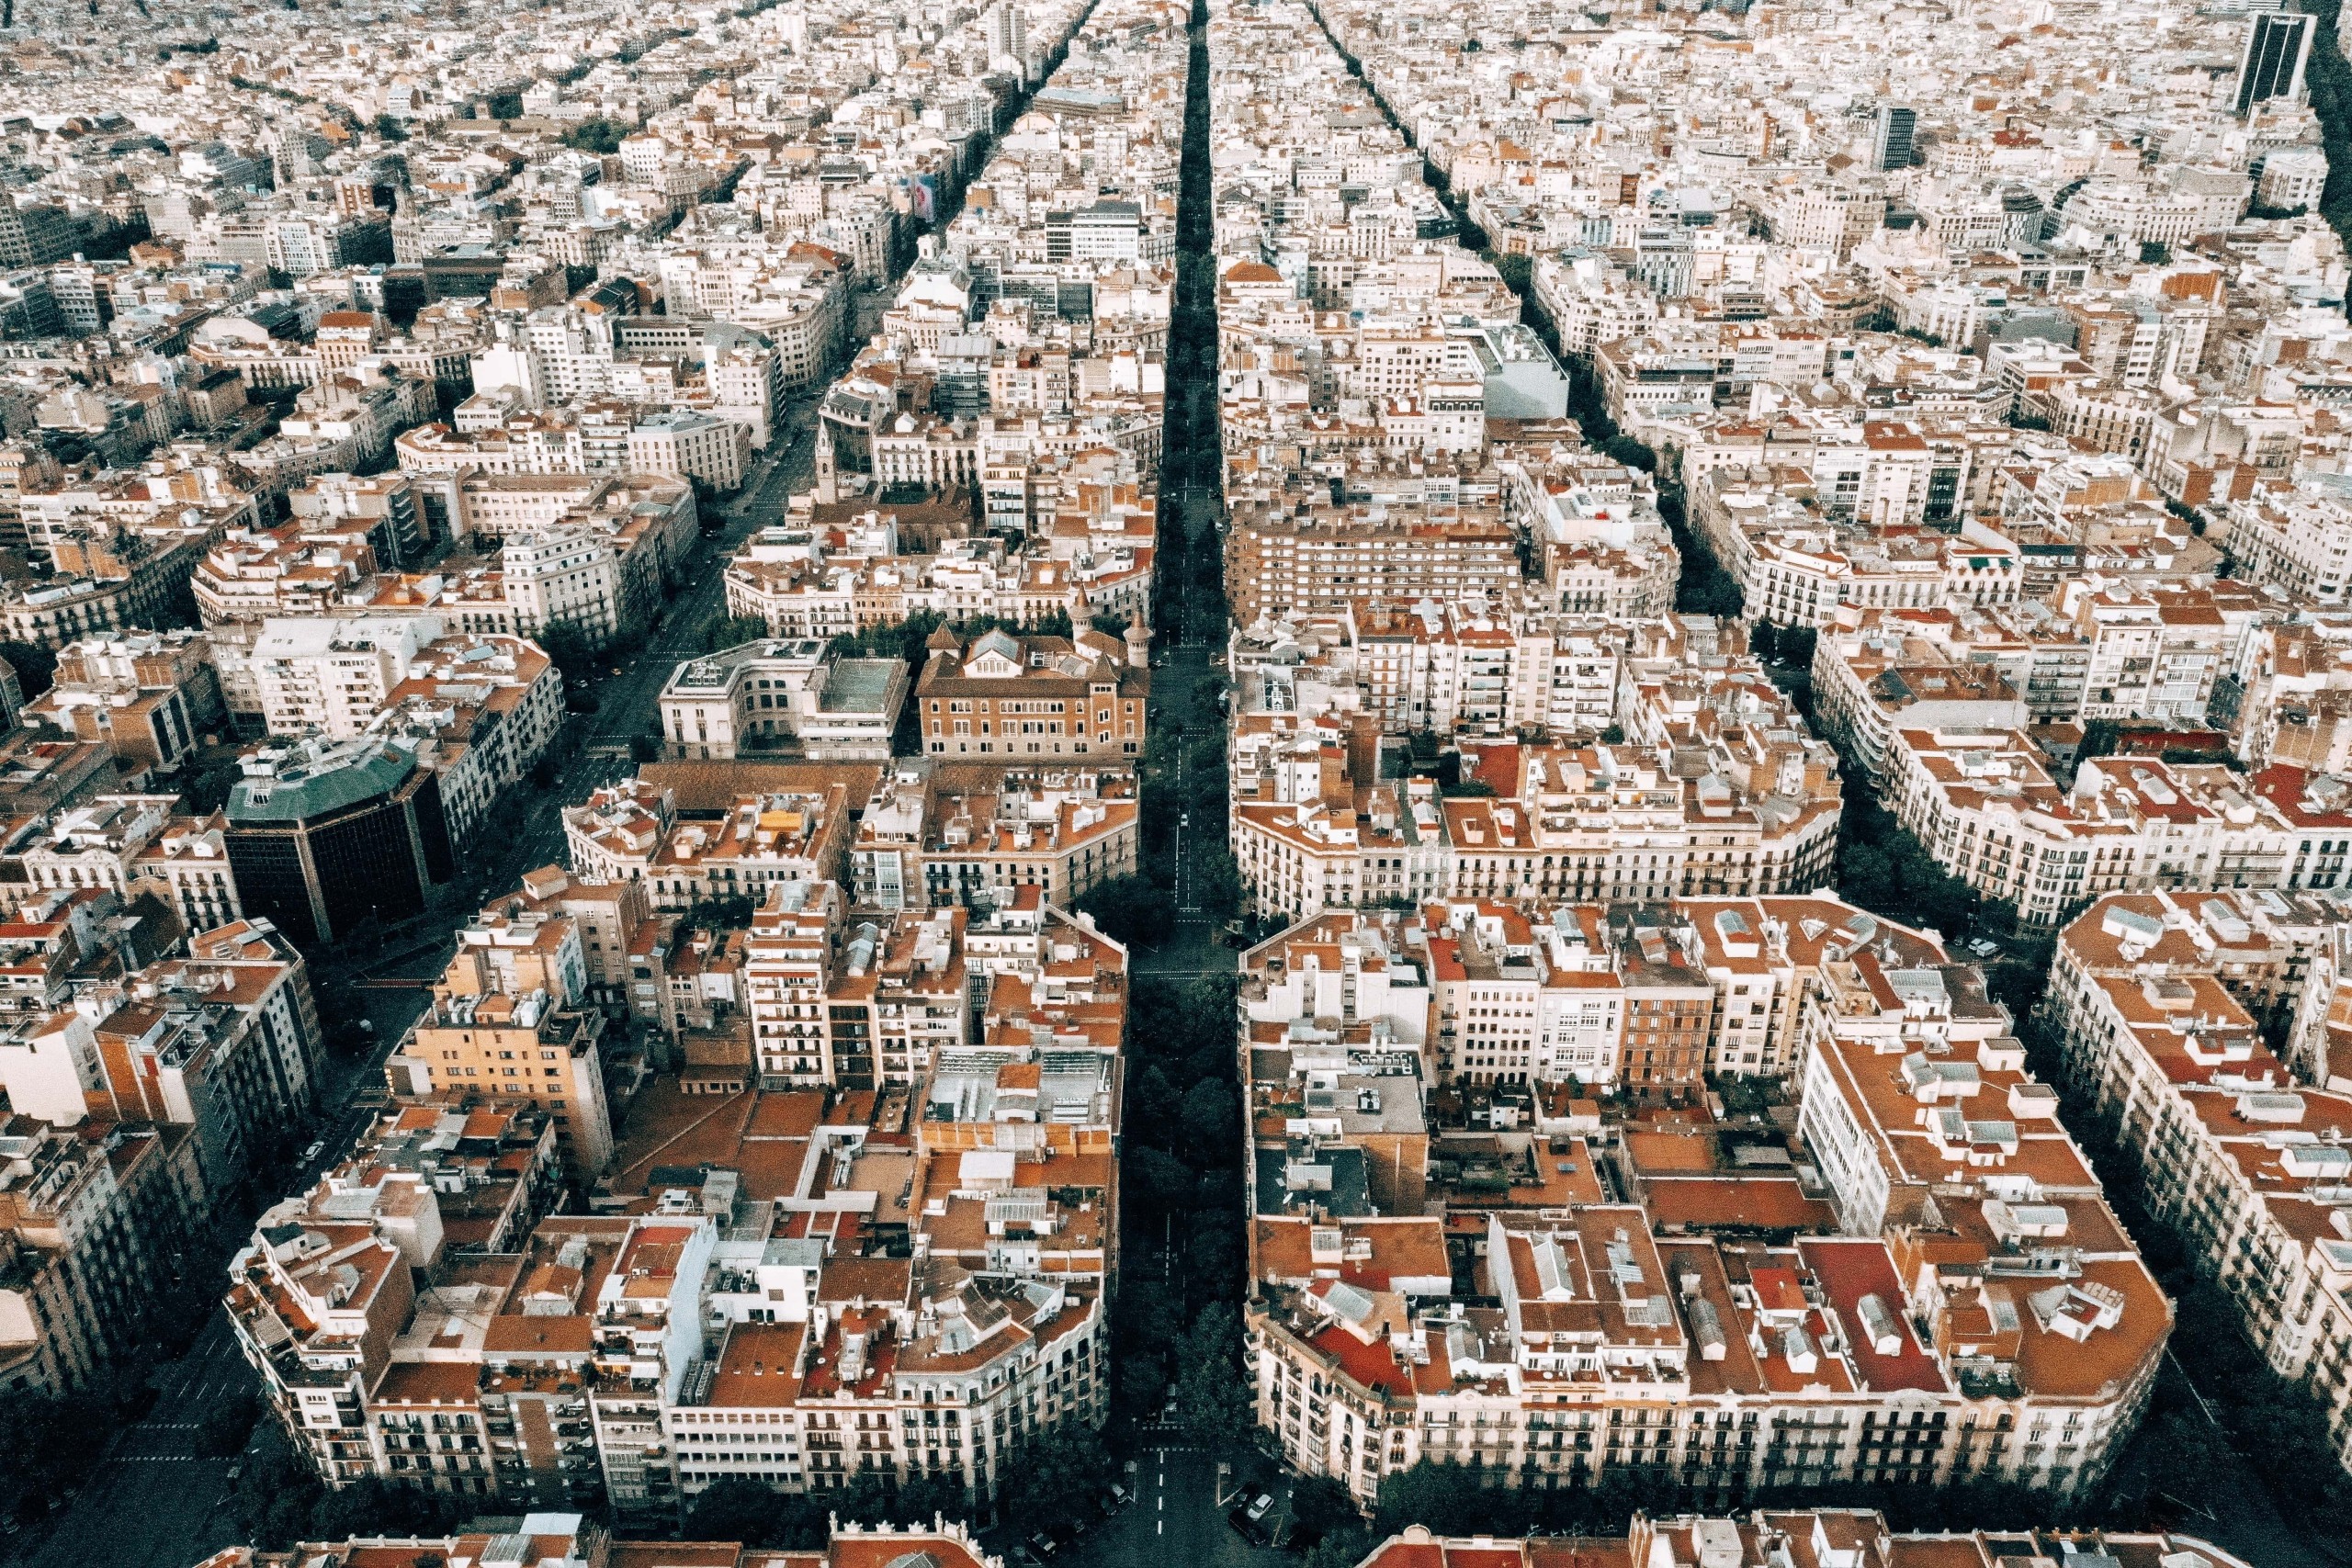 Stadtplanung par excellence: Barcelona. Während die Superblocks der Stadt gerne positives Beispiel sind, konnte die Landschaftsbiennale Barcelona 2023 nicht überzeugen. Foto: Kaspars Upmanis / Unsplash